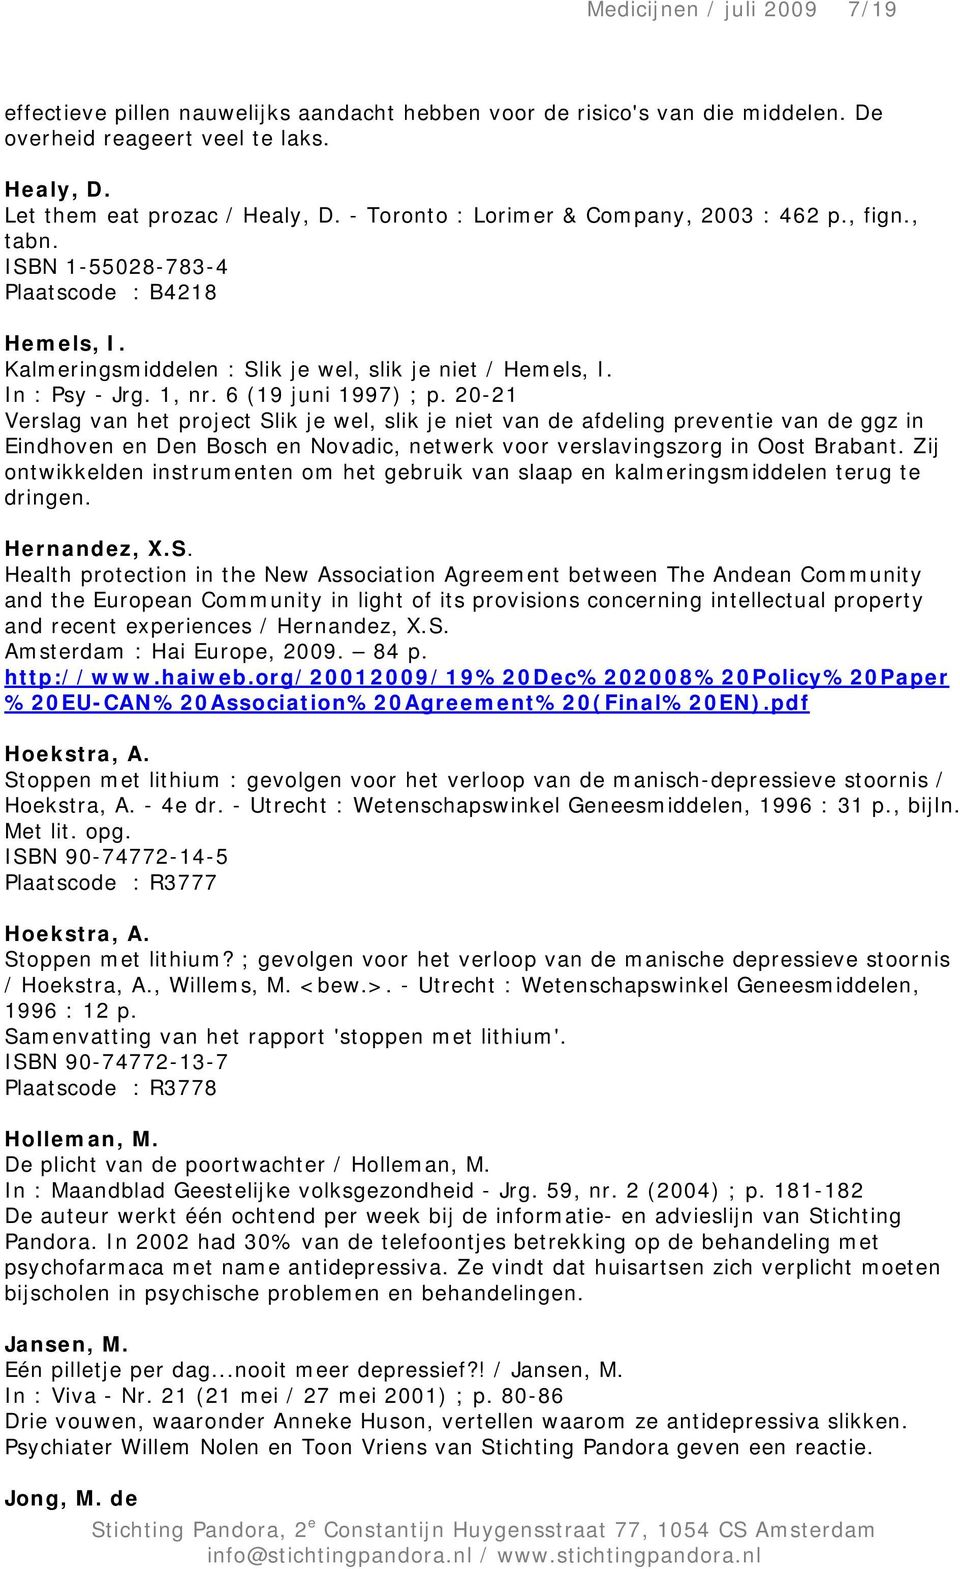 6 (19 juni 1997) ; p. 20-21 Verslag van het project Slik je wel, slik je niet van de afdeling preventie van de ggz in Eindhoven en Den Bosch en Novadic, netwerk voor verslavingszorg in Oost Brabant.